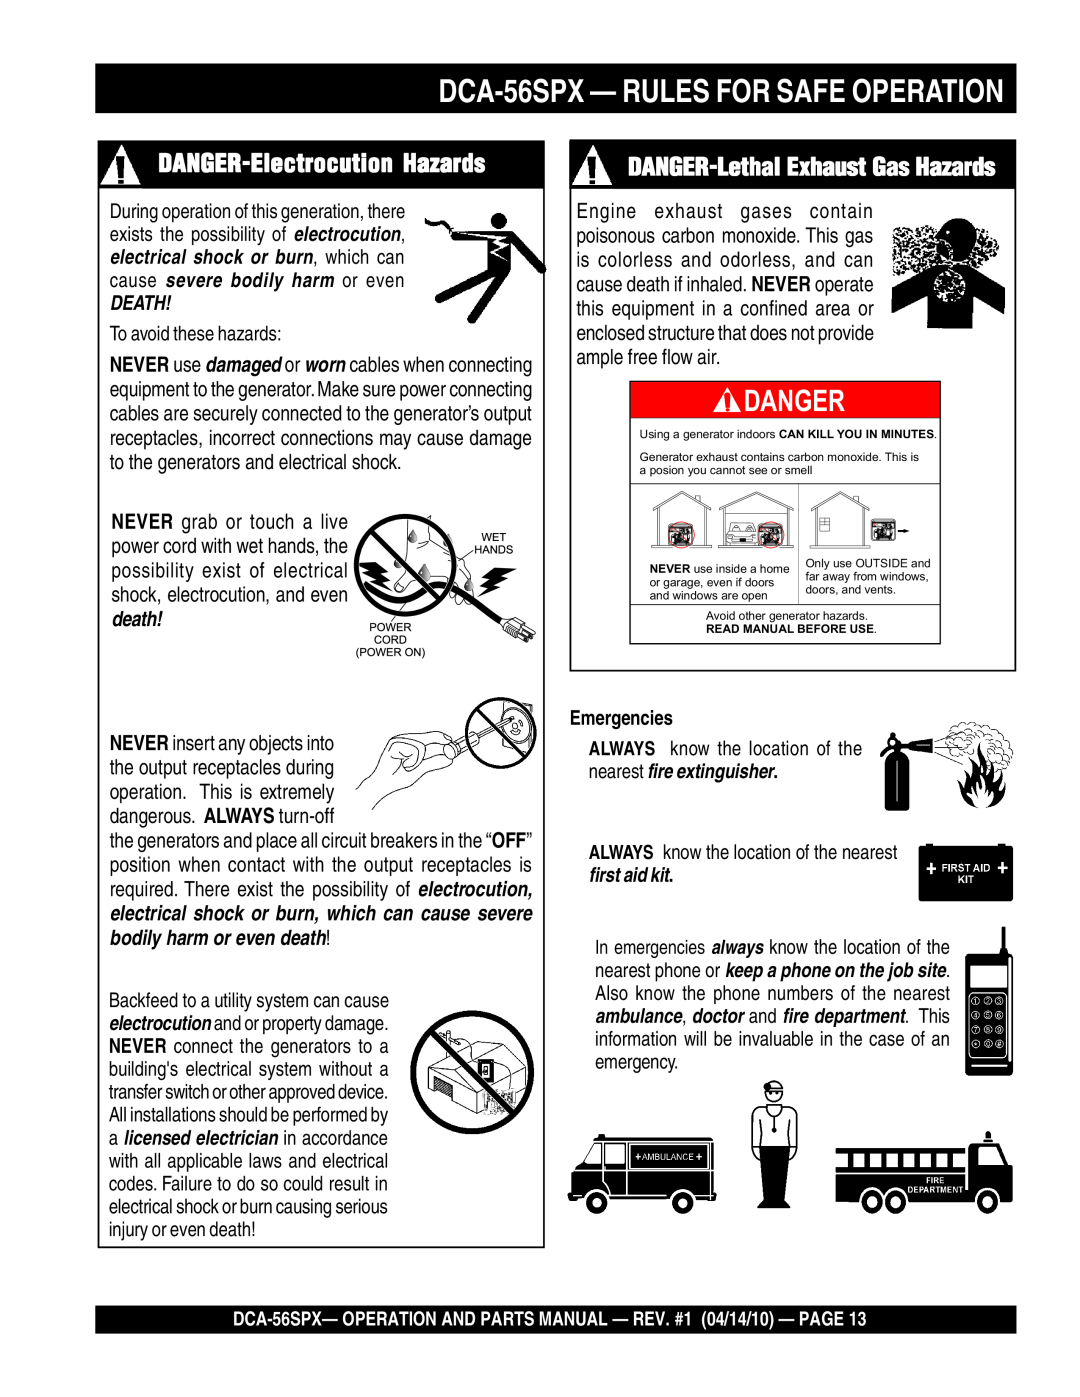 Multiquip DANGER-ElectrocutionHazards, DANGER-LethalExhaust Gas Hazards, DCA-56SPX- RULES FOR SAFE OPERATION, Danger 